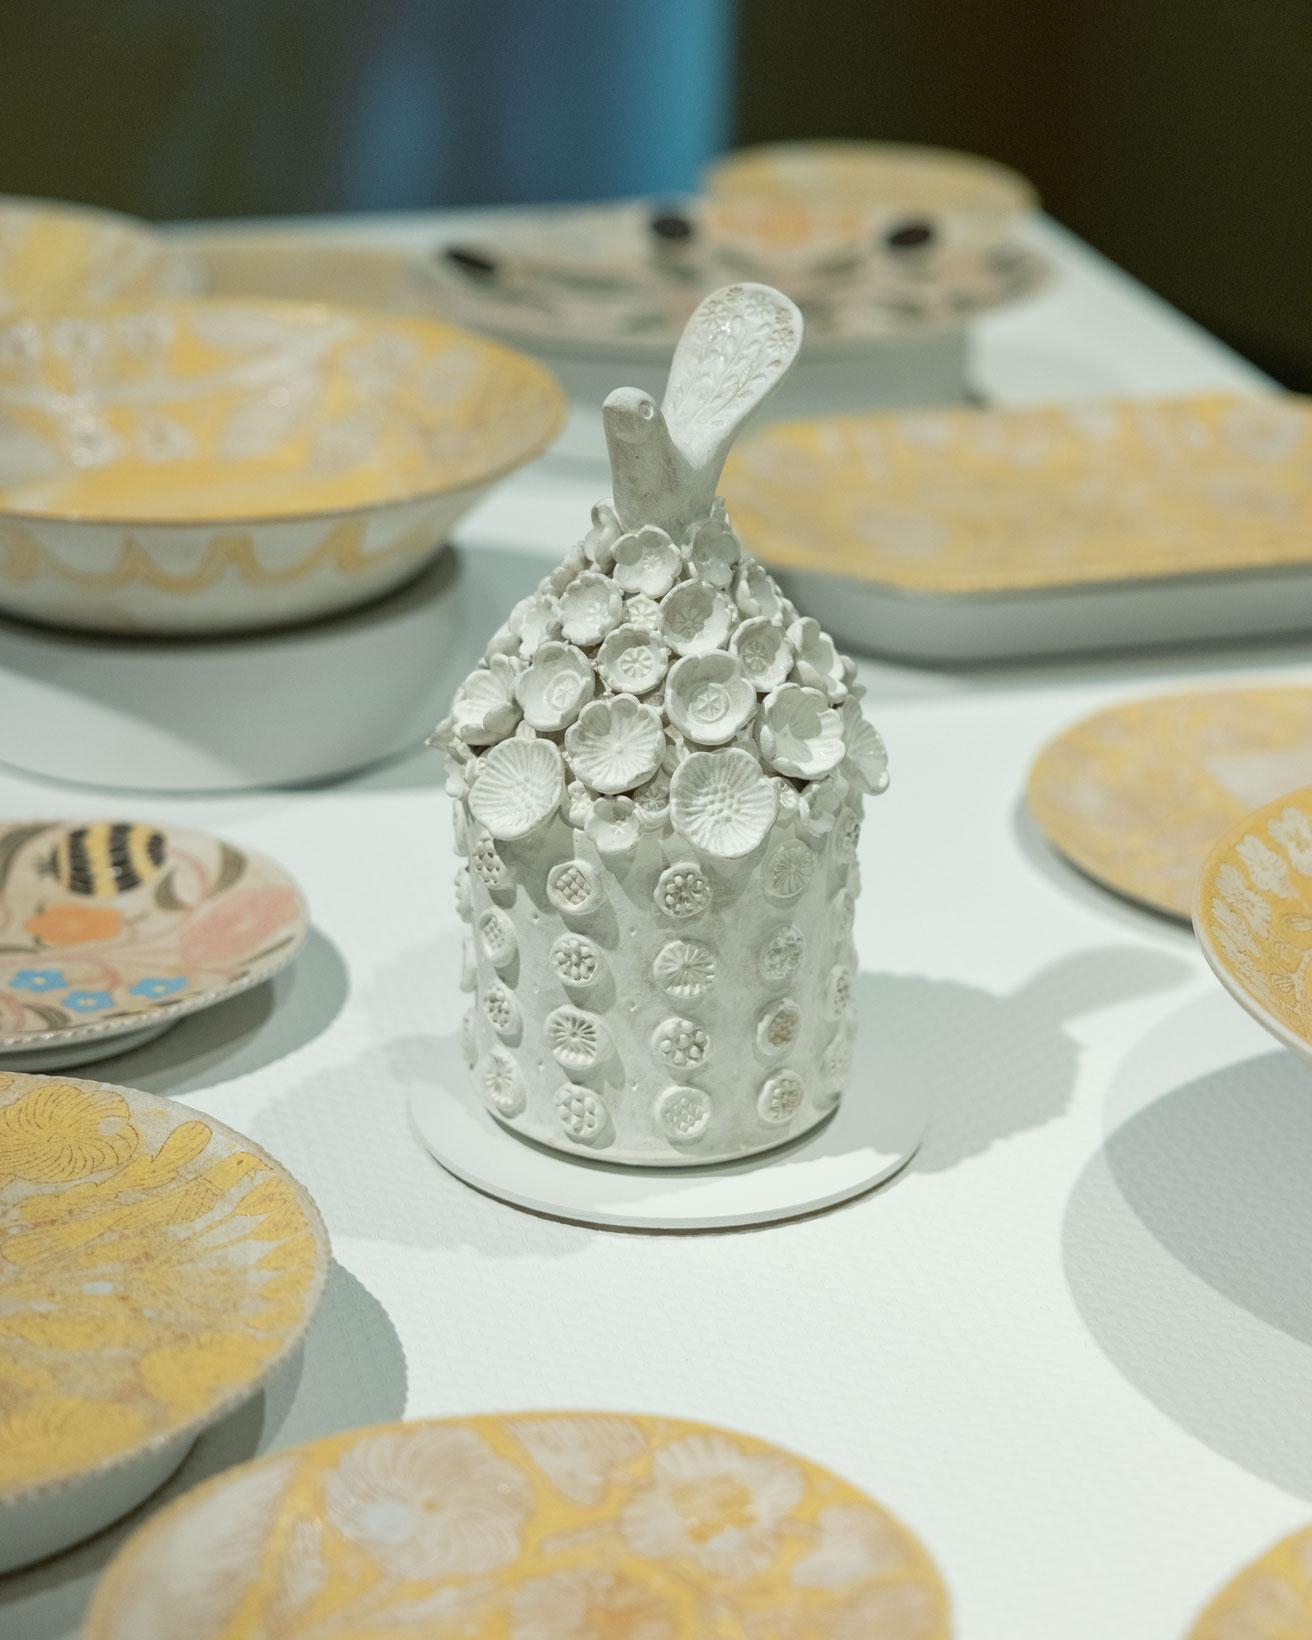 鹿児島のシグネチャーでもある陶器作品「花と鳥のタワー」。2023年バージョン。